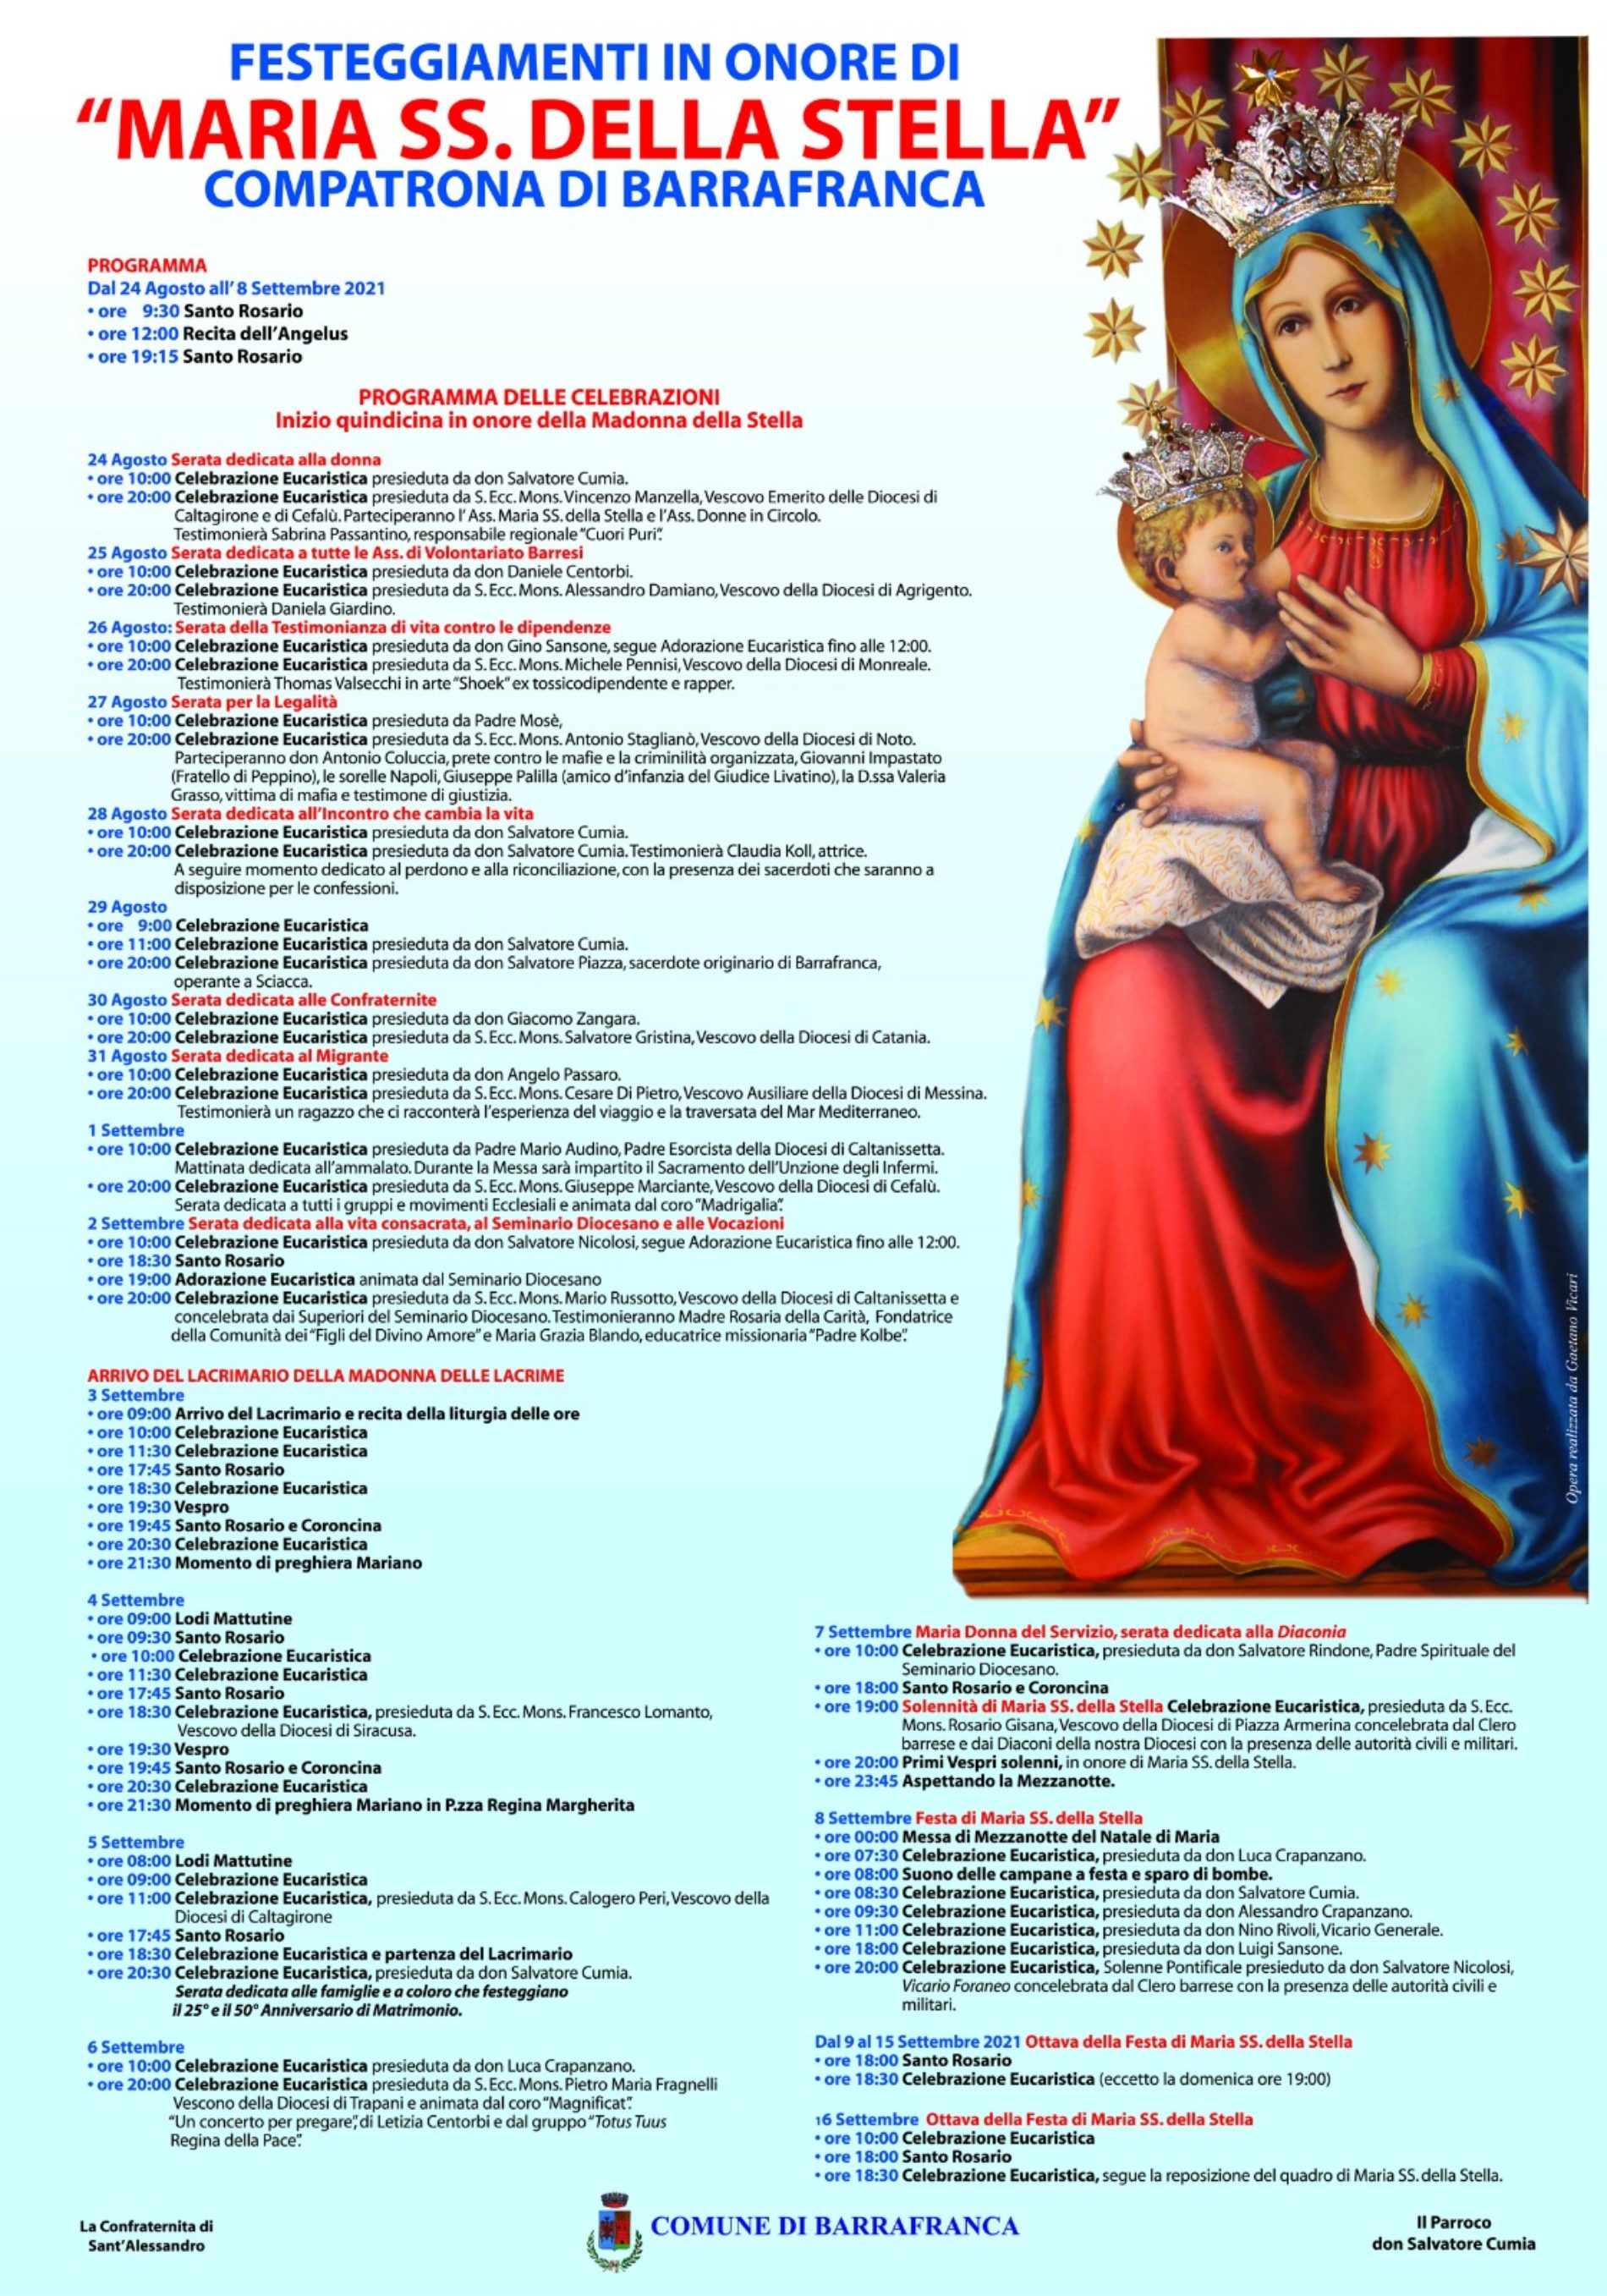 BARRAFRANCA. Stasera a Barrafranca arriverà la Madonna delle Lacrime di Siracusa.